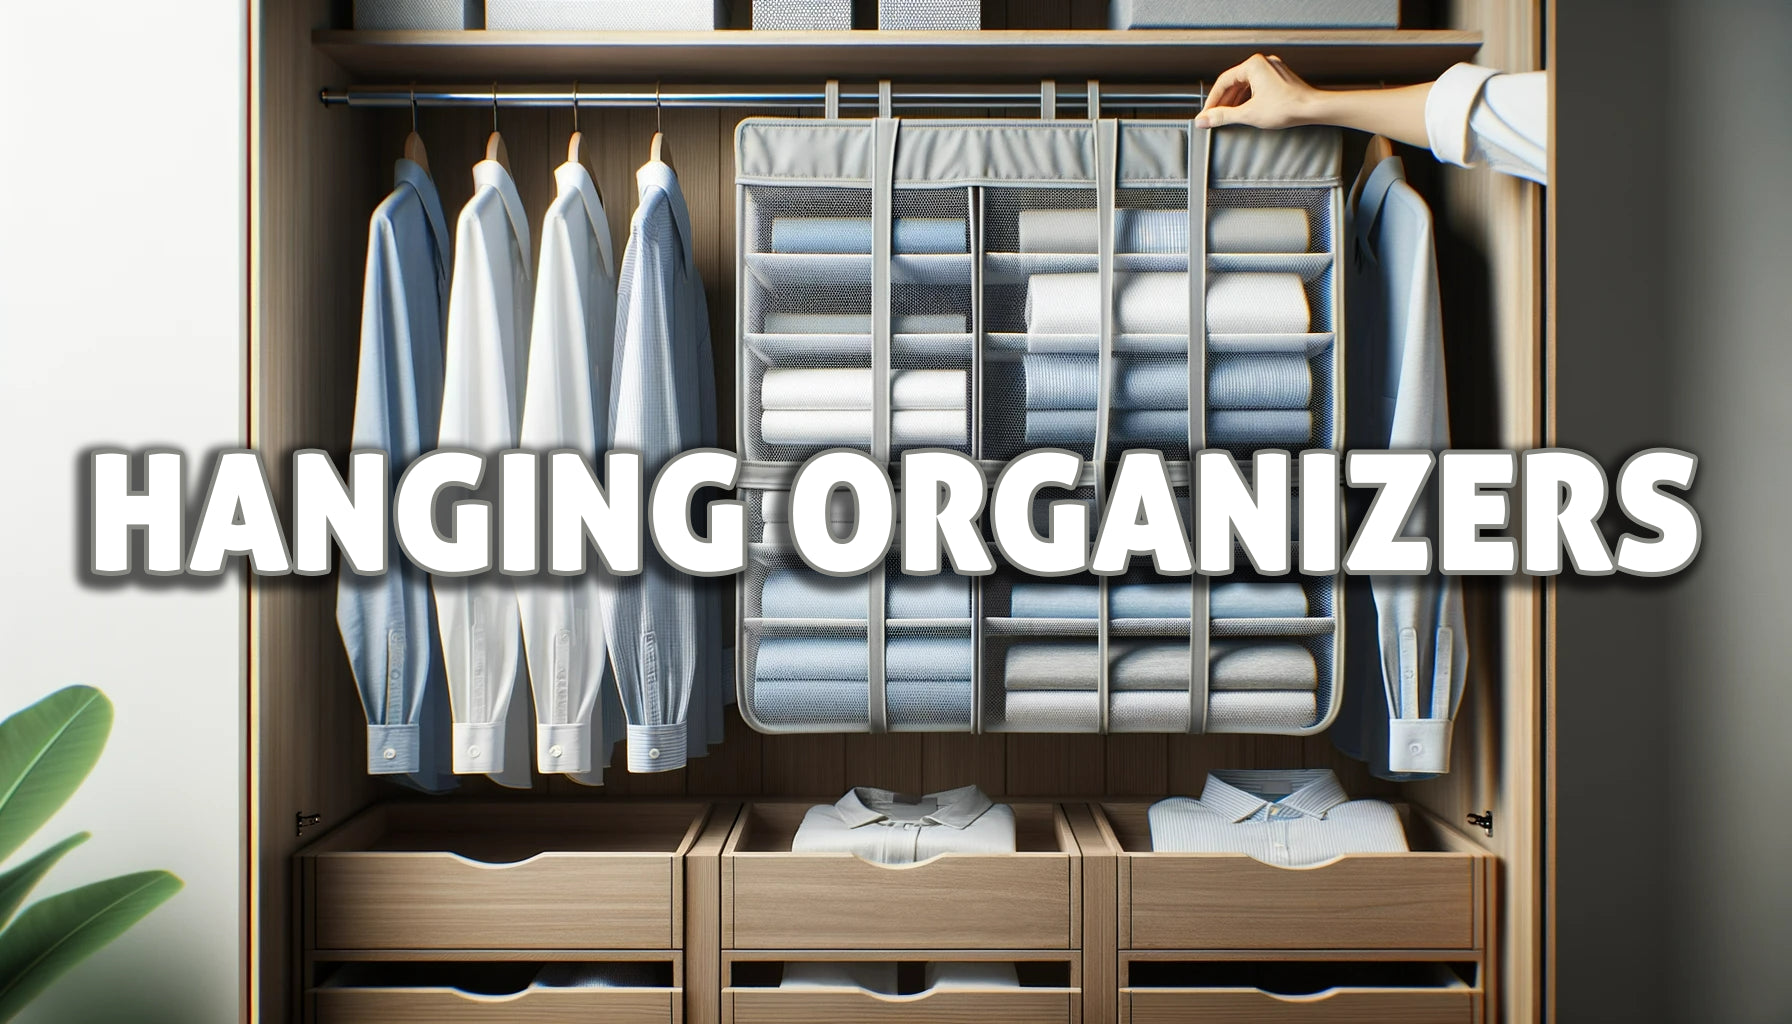 Hanging organizer